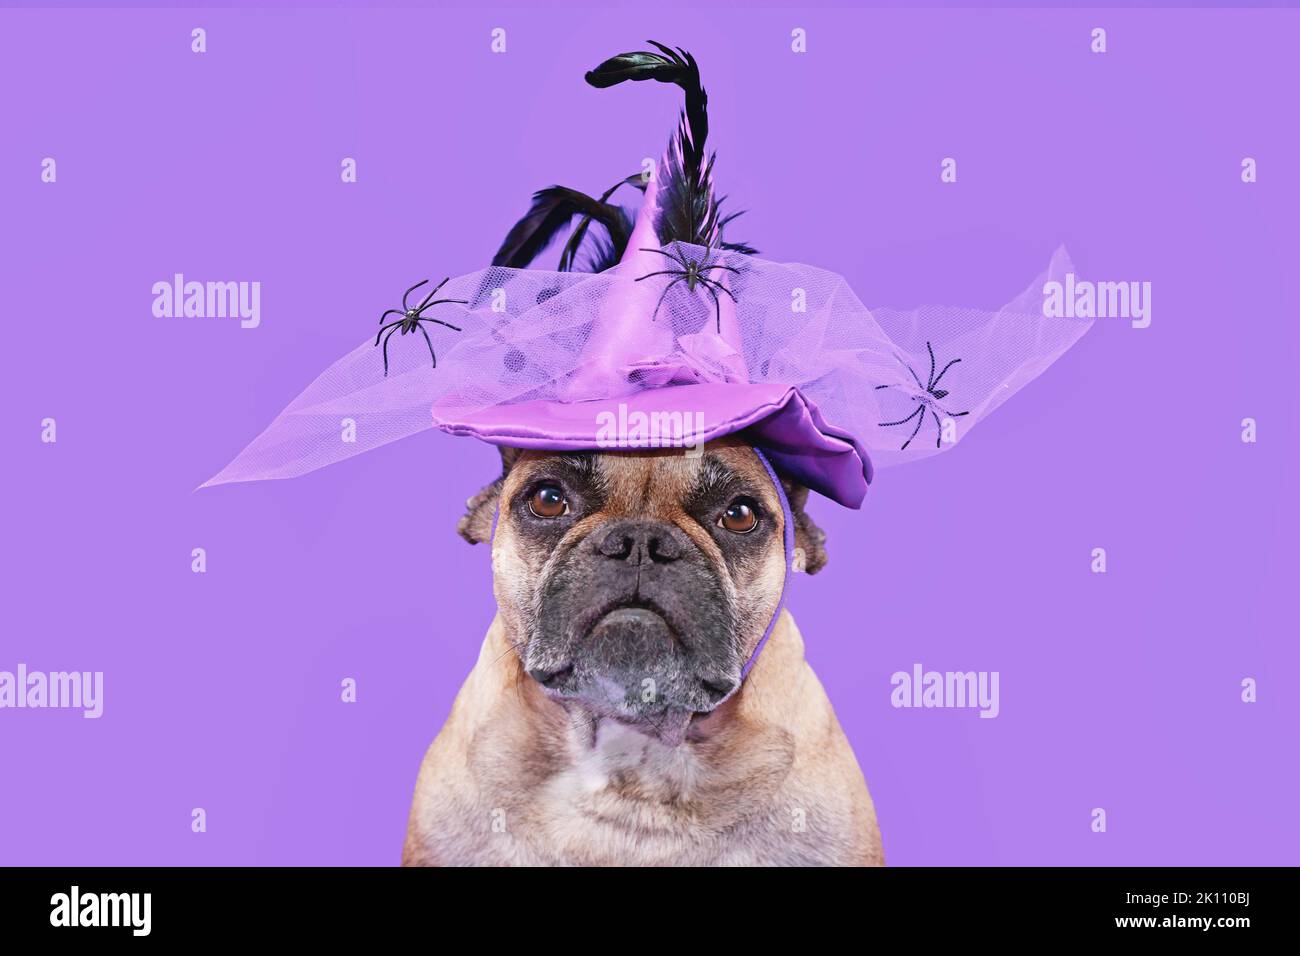 Retrato del perro Bulldog francés con sombrero de bruja de disfraz de Halloween sobre fondo morado Foto de stock